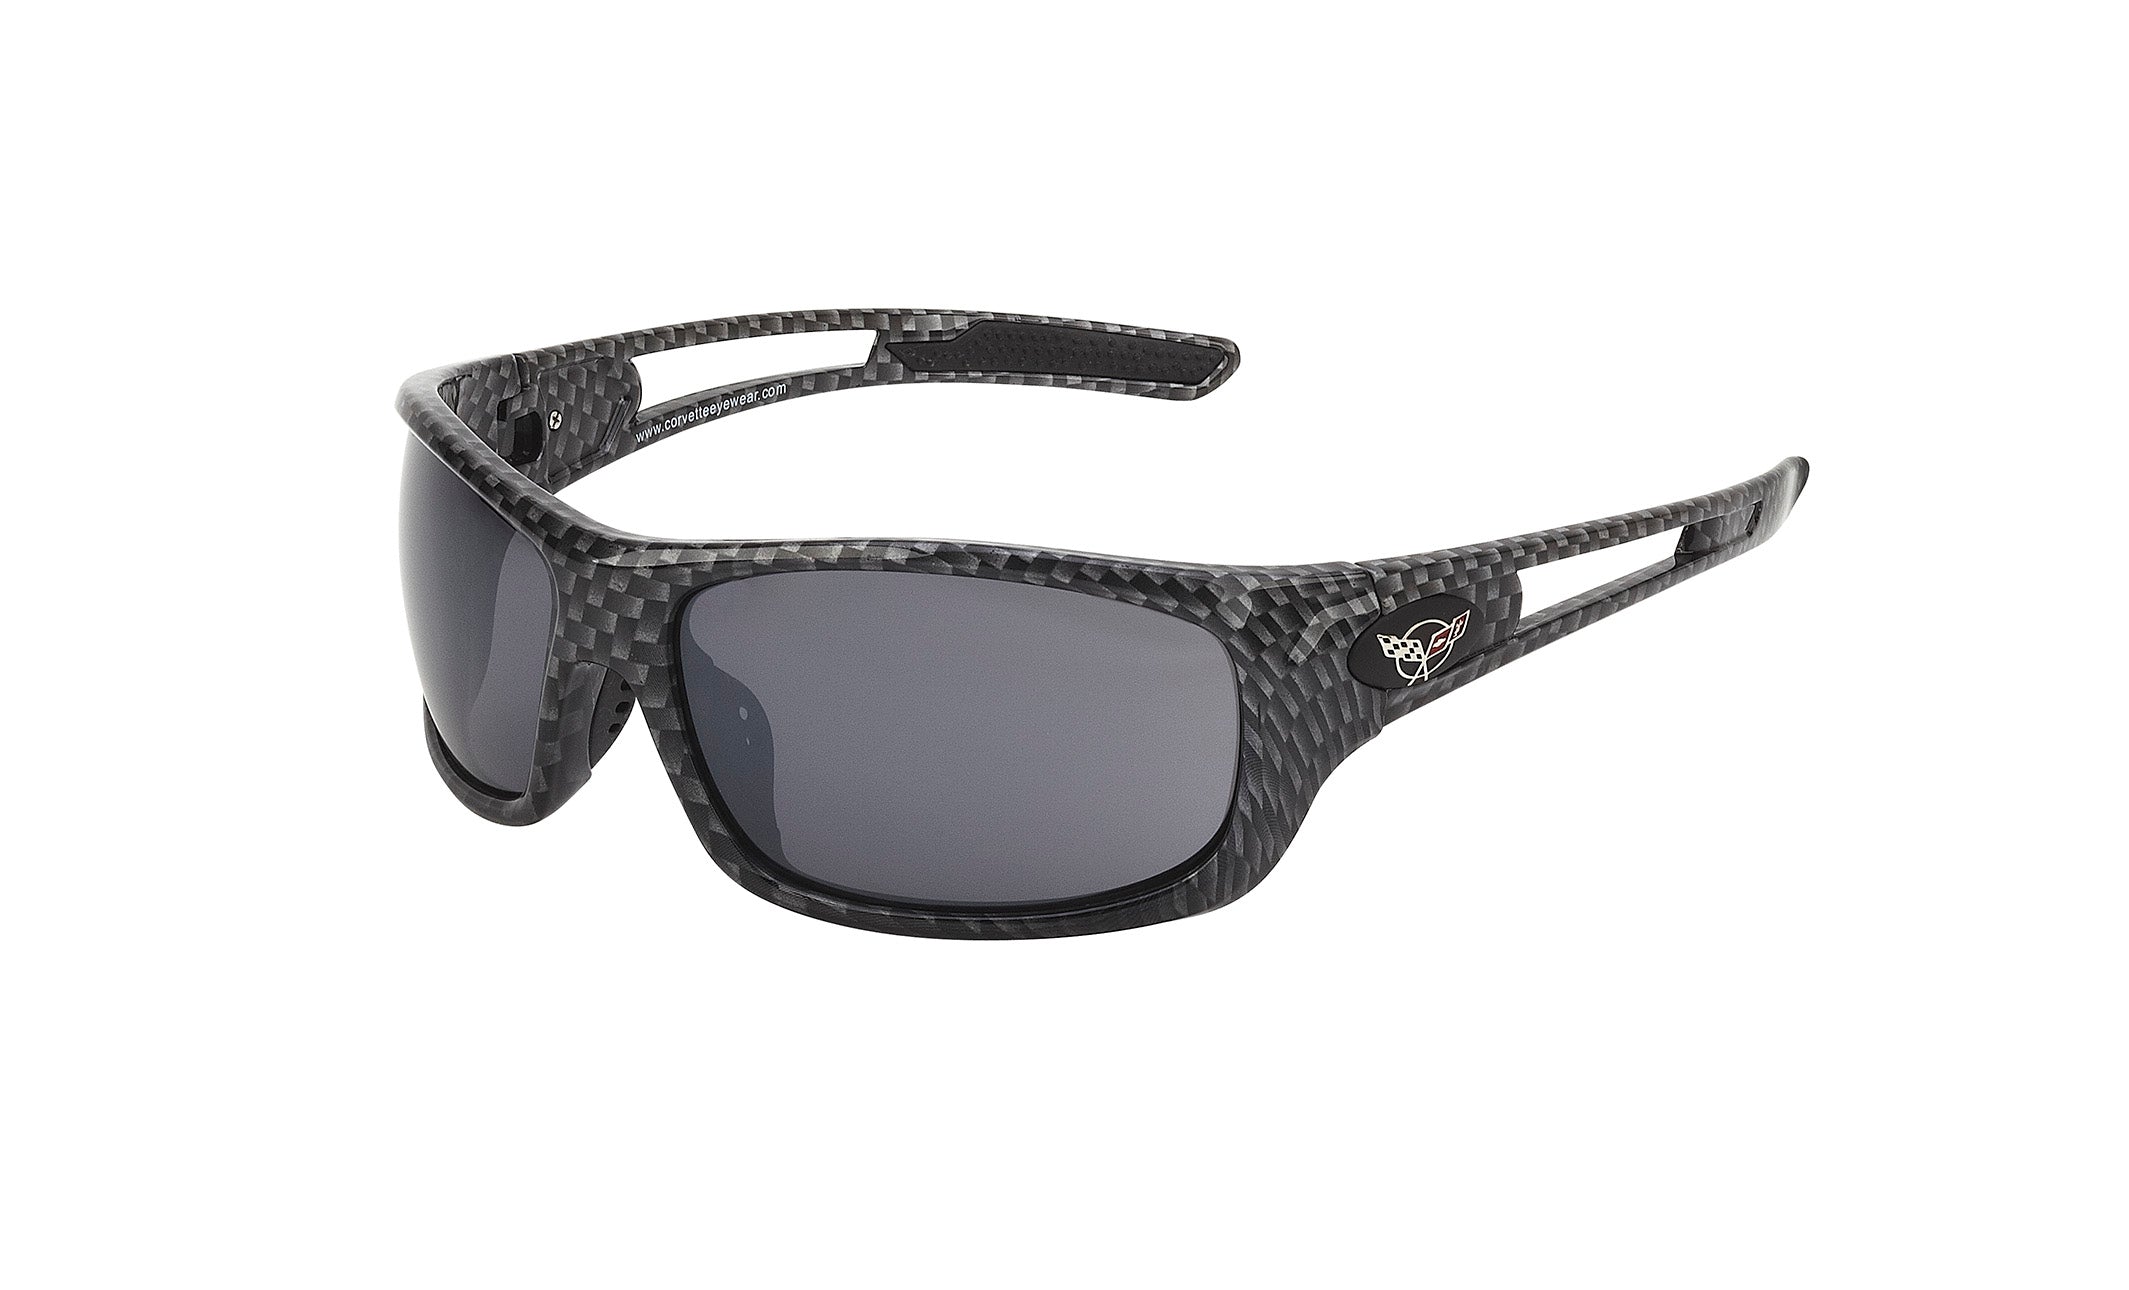 c5-corvette-carbon-fiber-wrap-around-sunglasses